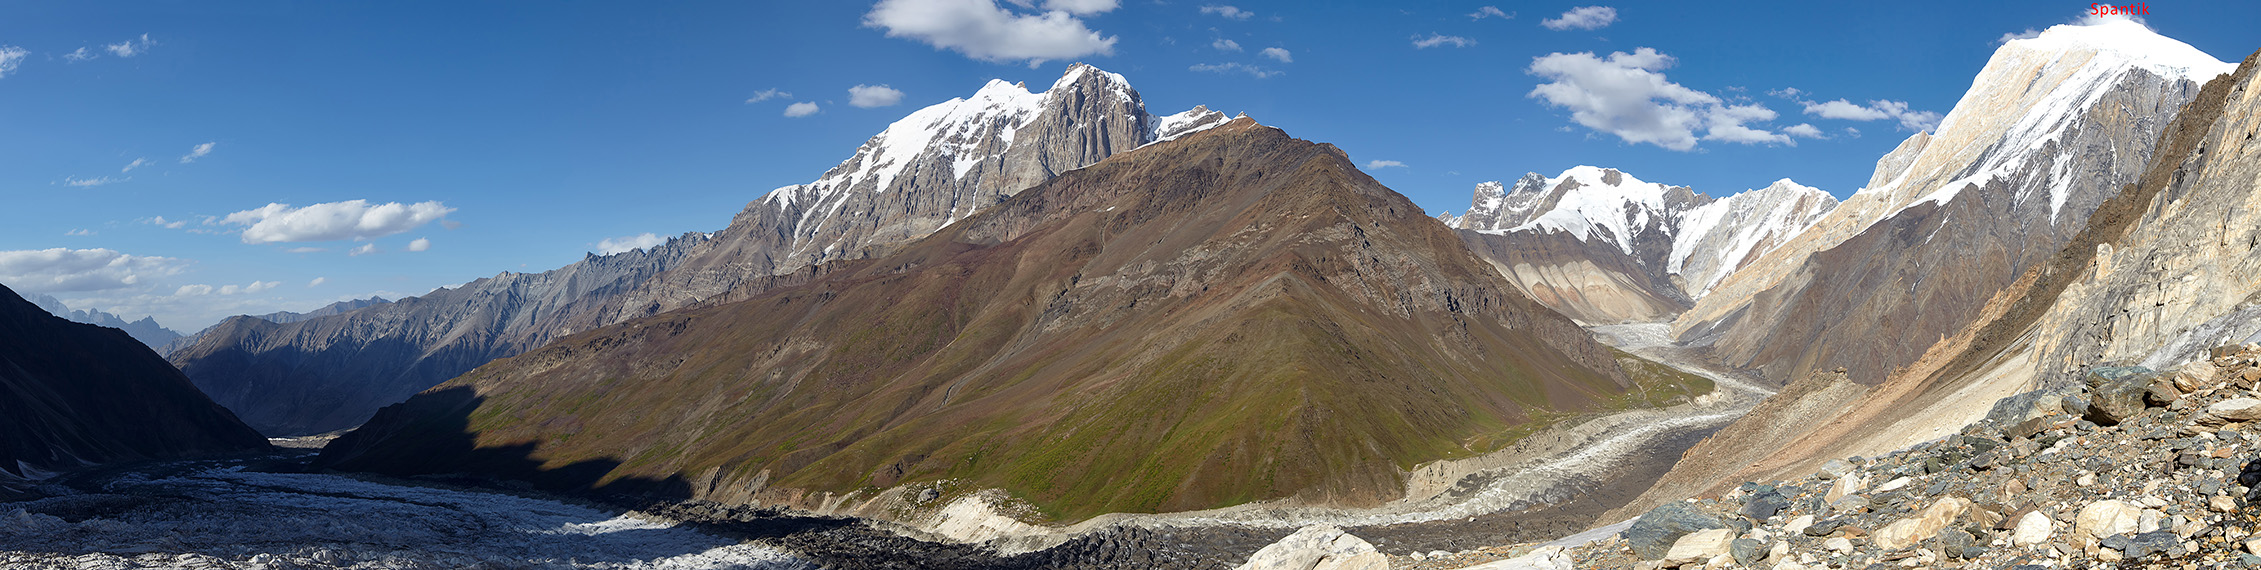 Панорама ледников Sumayar Gang и Golden Peak, в правой части – пик Spantik